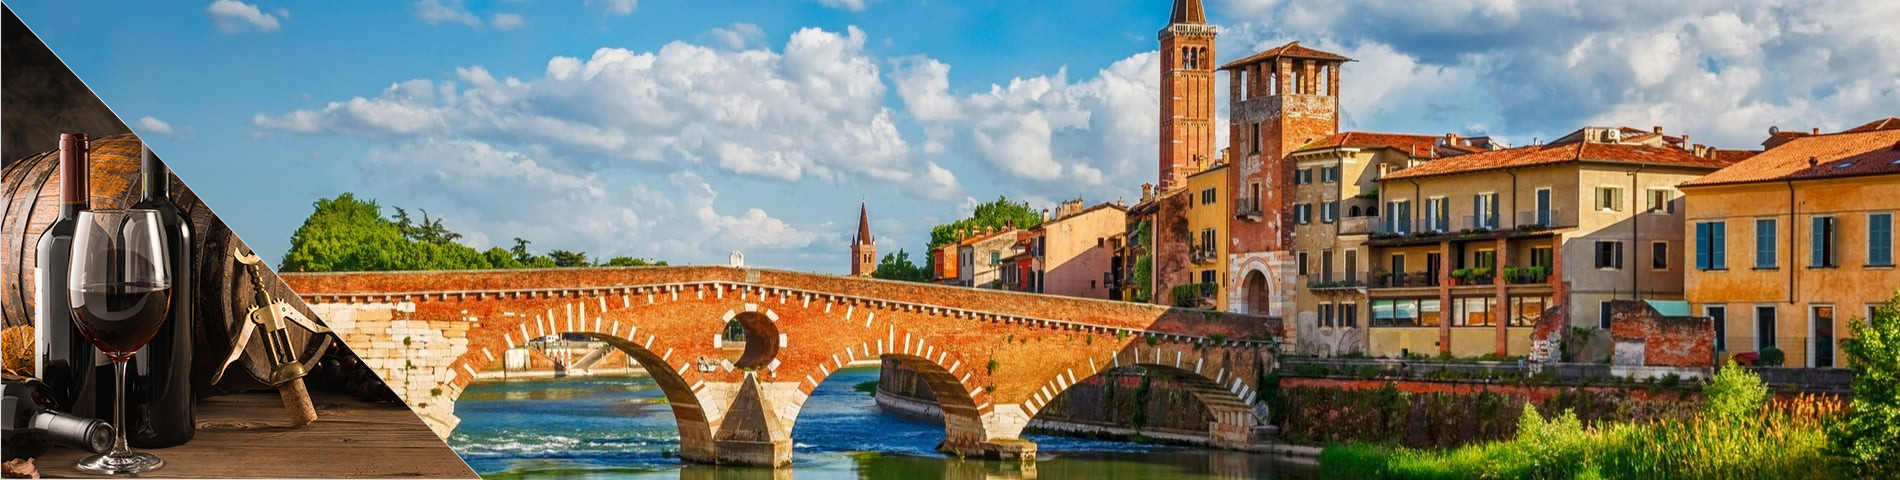 Verona - Olasz & borászat